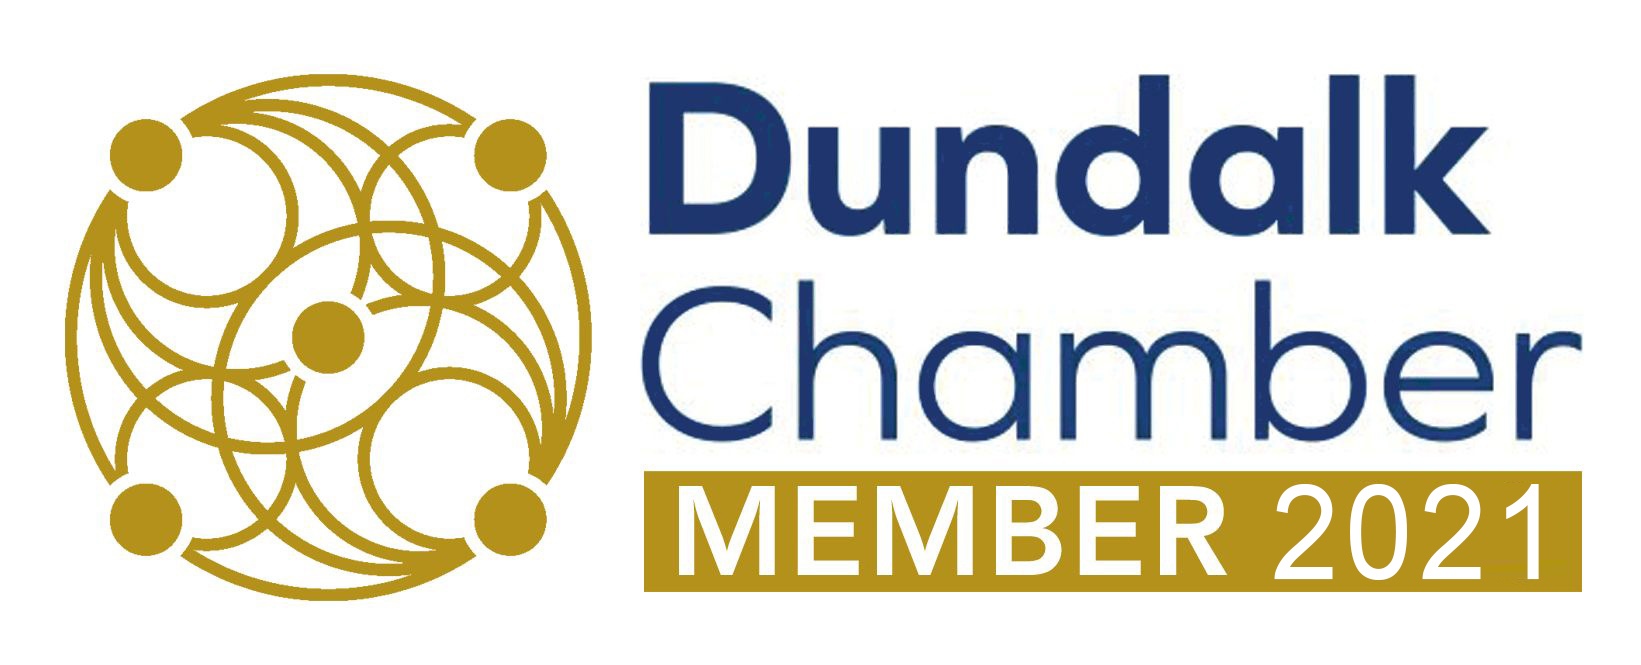 dundalk chamber member 2021 no frame